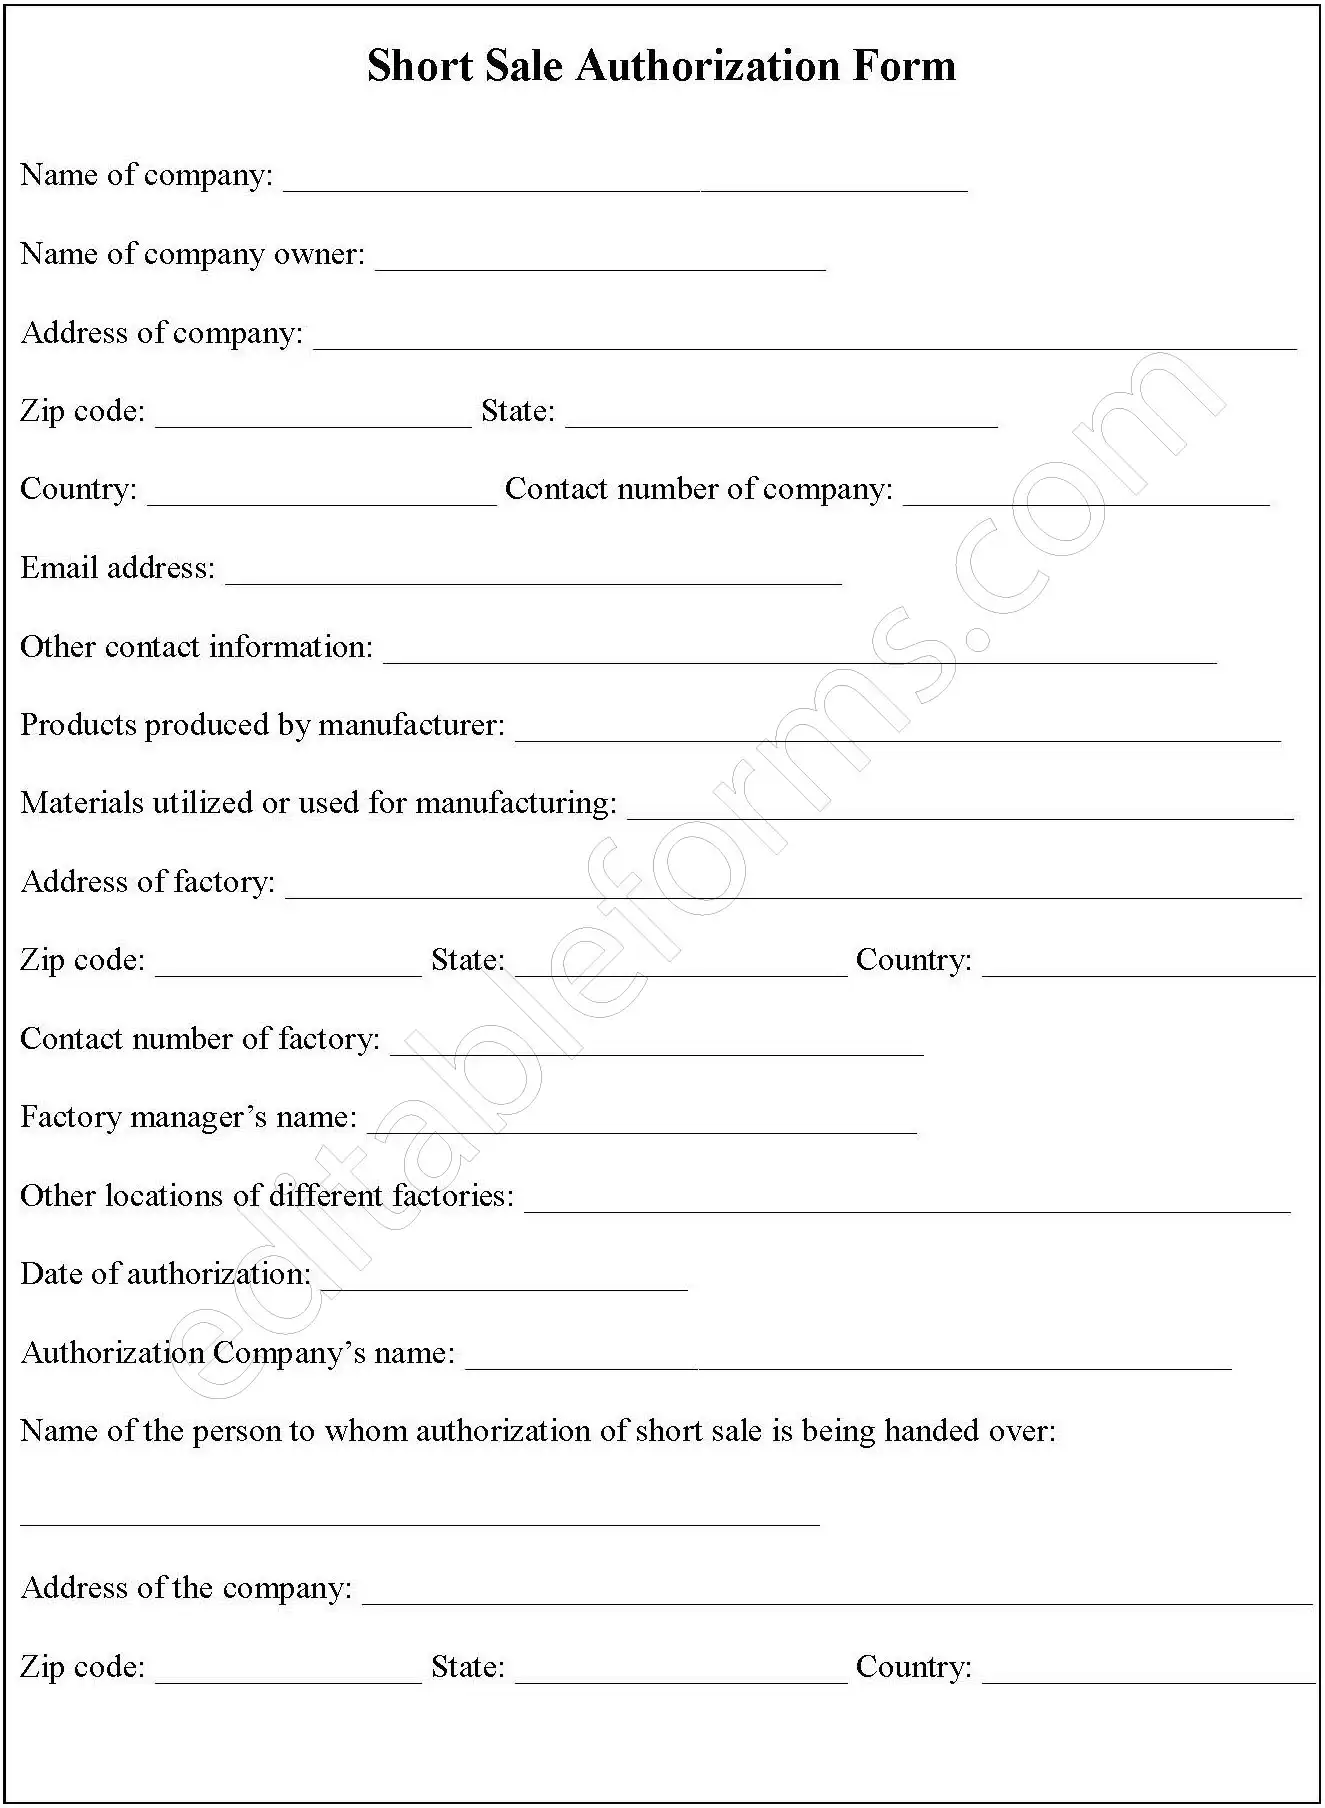 Short Sale Authorization Fillable PDF Form